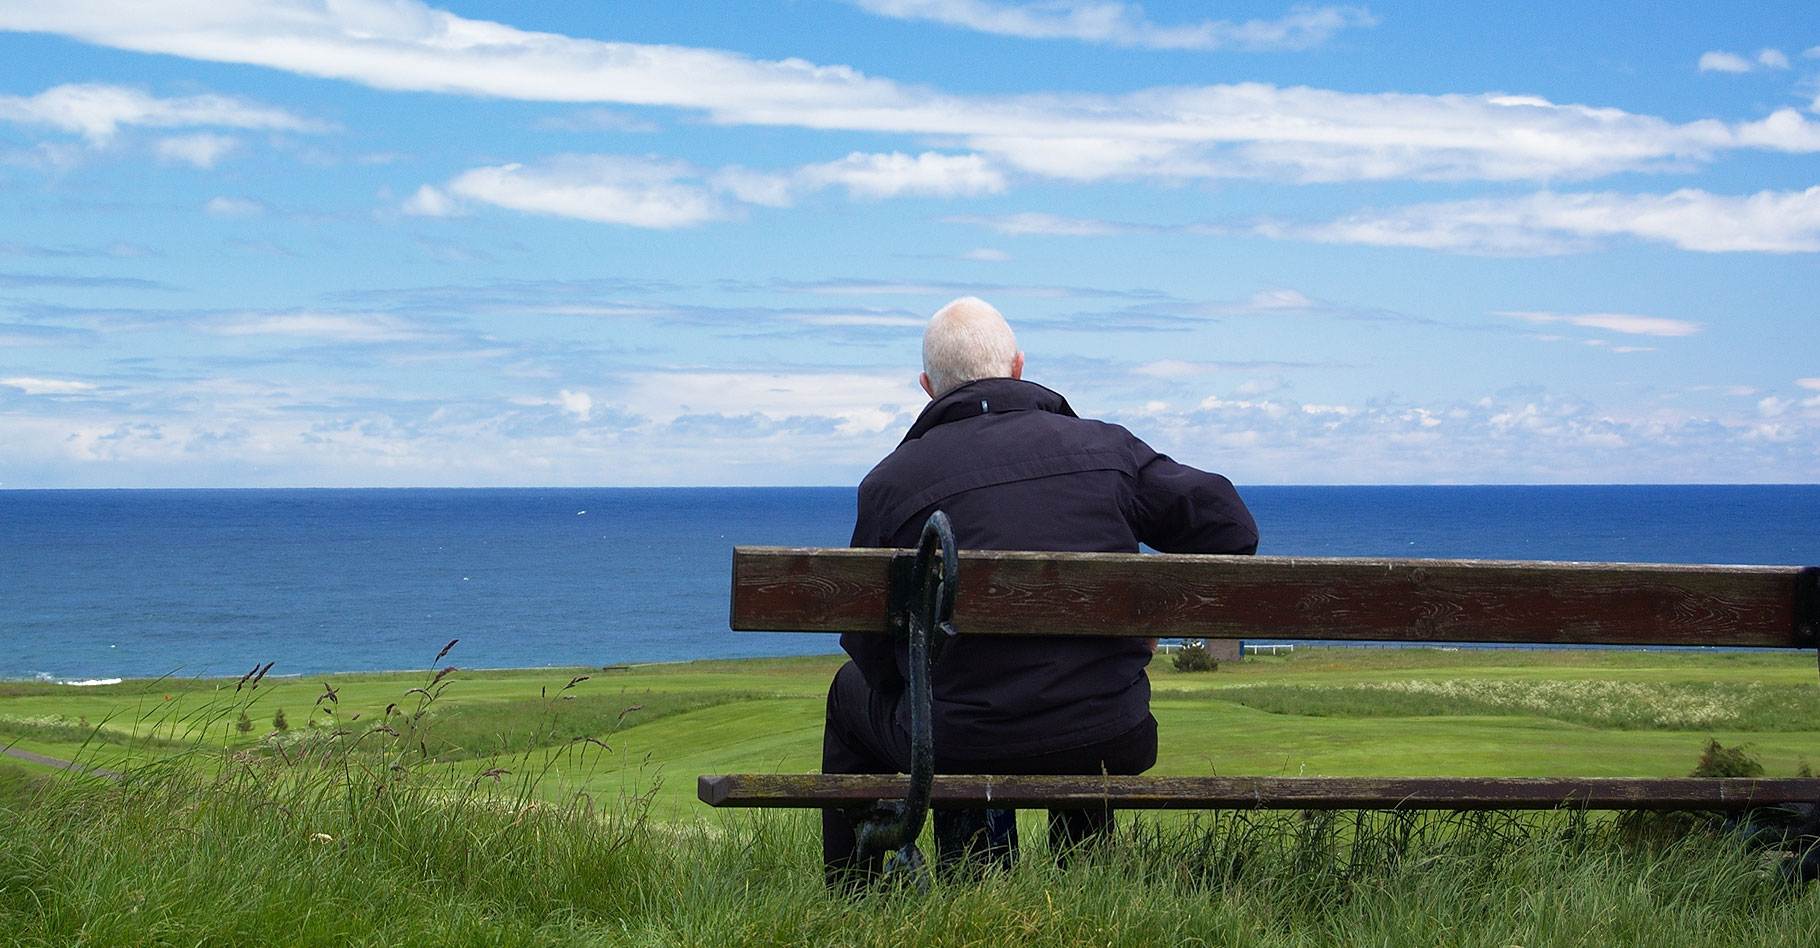 La maladie de Parkinson un&nbsp;monde interieur de&nbsp;solitude.&nbsp;© Tim Parkinson -&nbsp;CC BY-NC 2.0